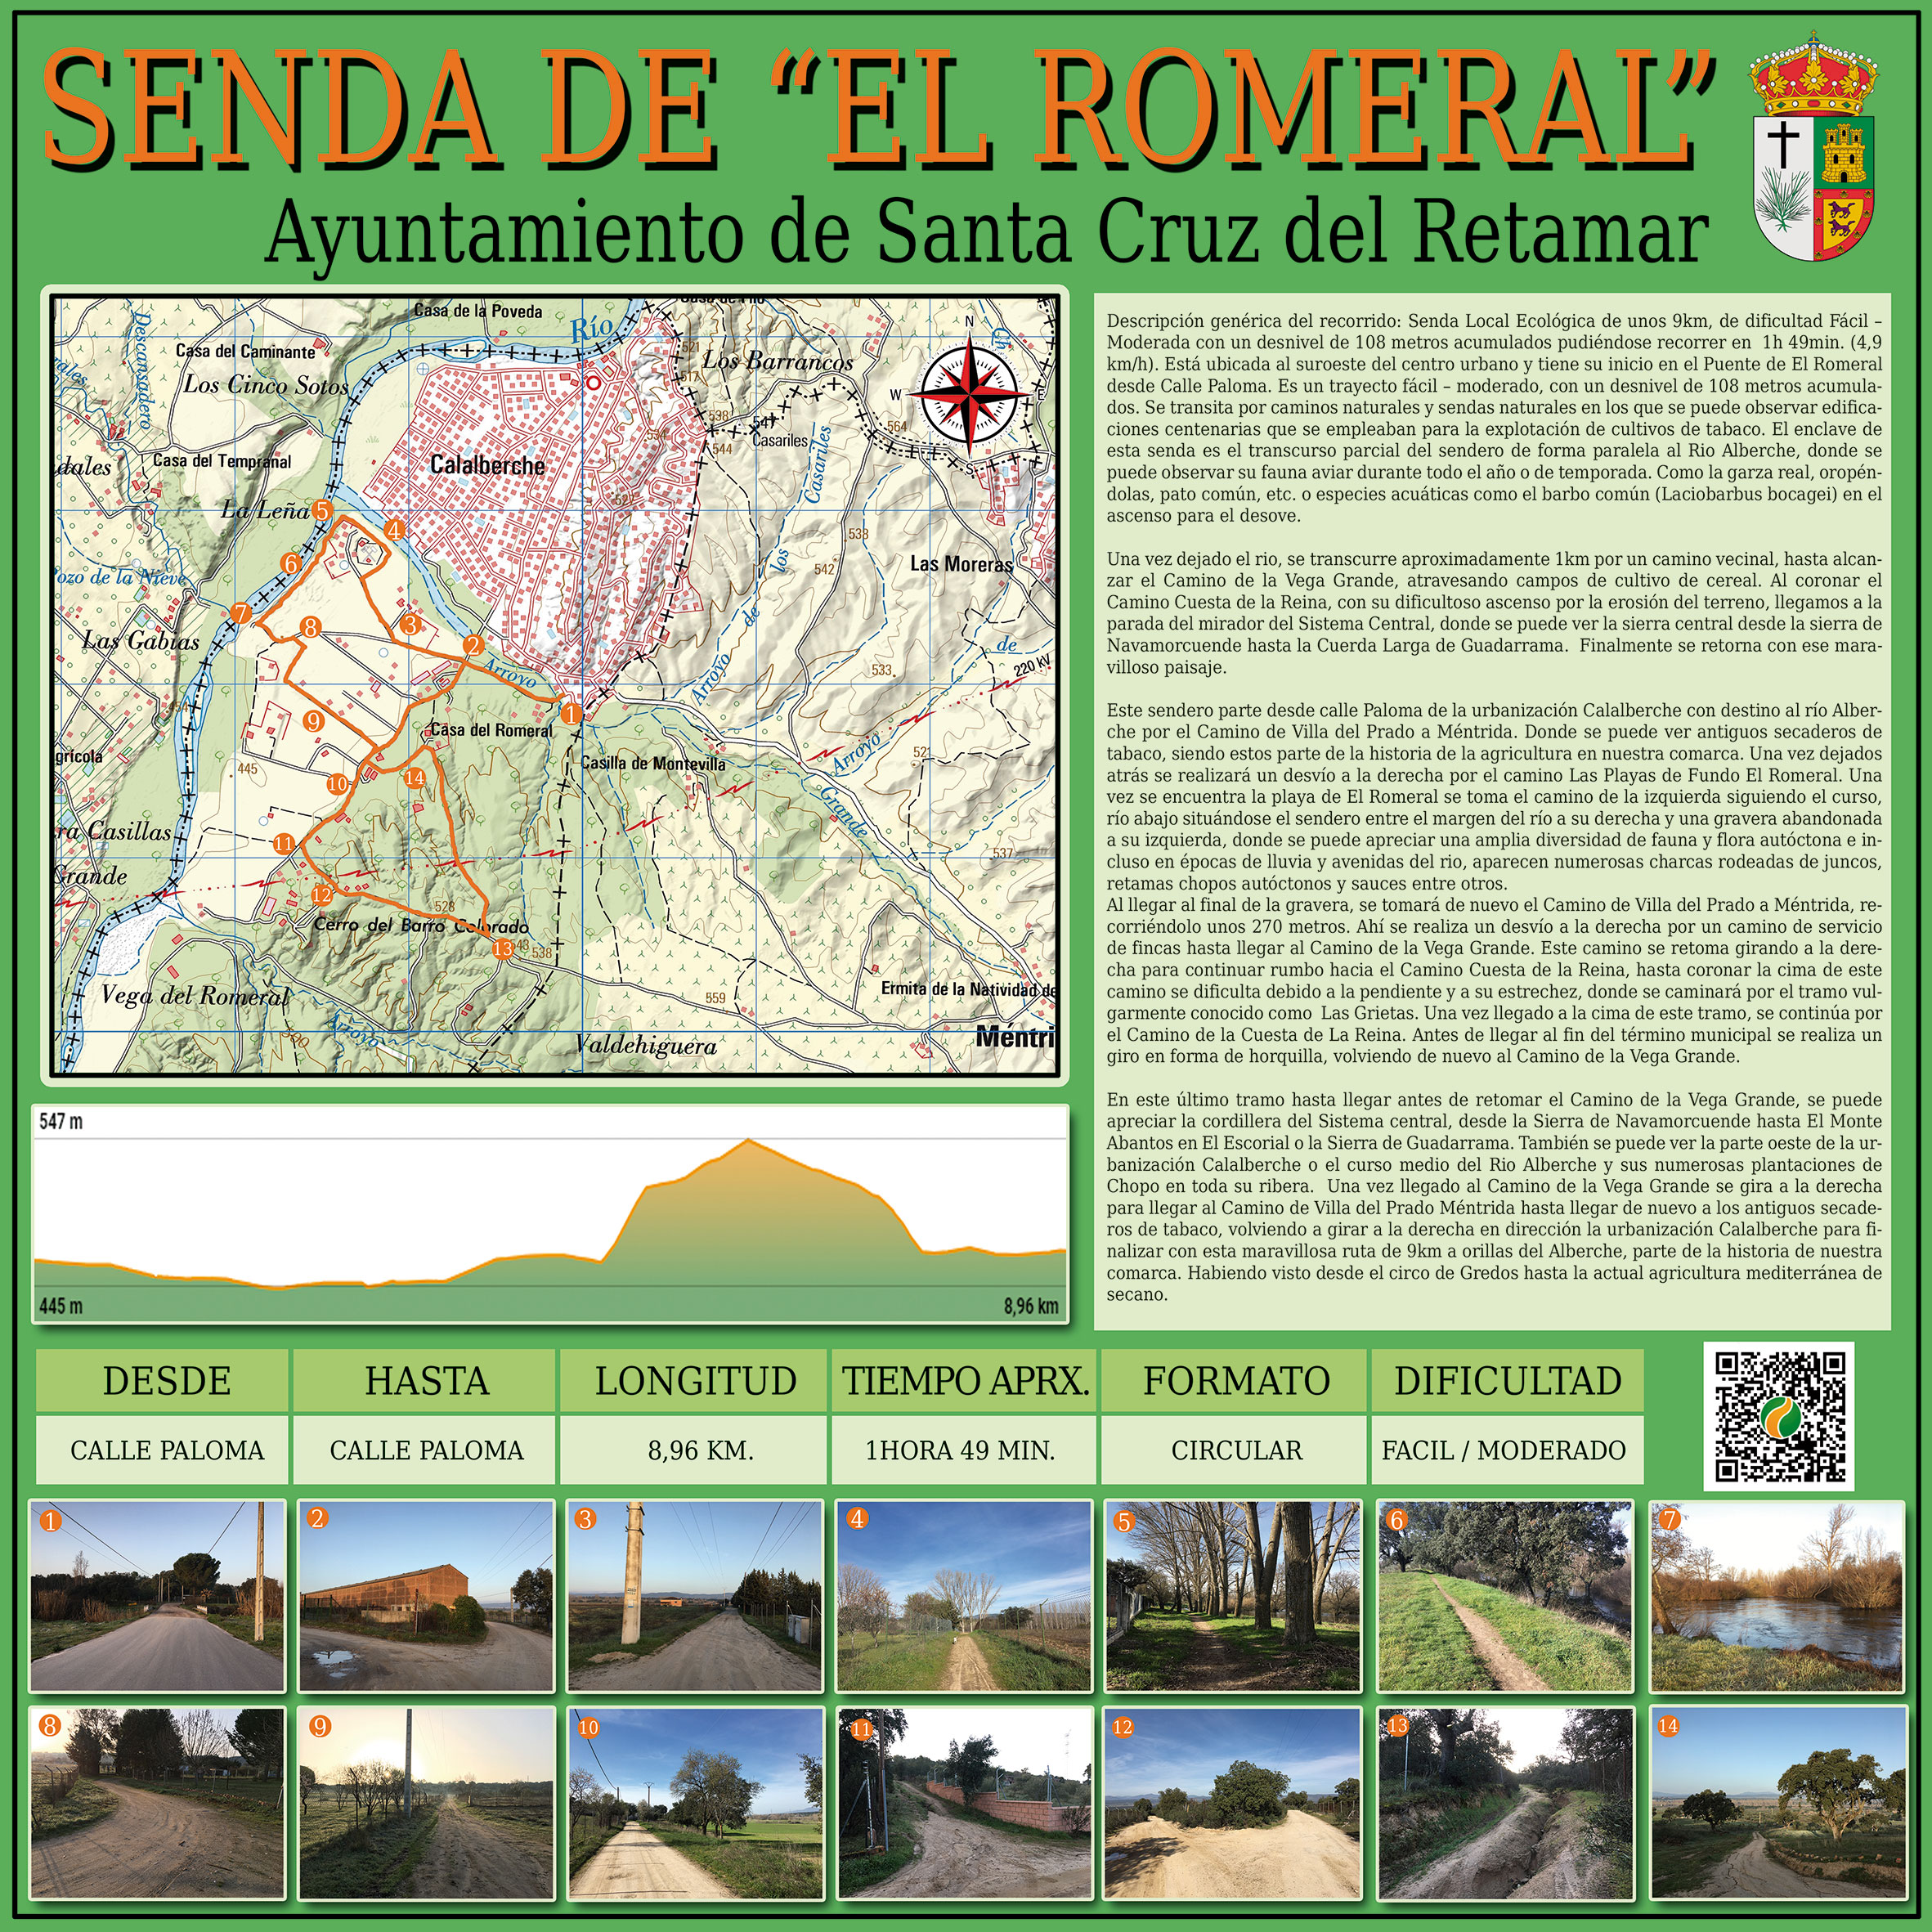 Senda Rutas Saludables El Romeral - Concejalía de Deportes del Ayuntamiento de Santa Cruz del Retamar